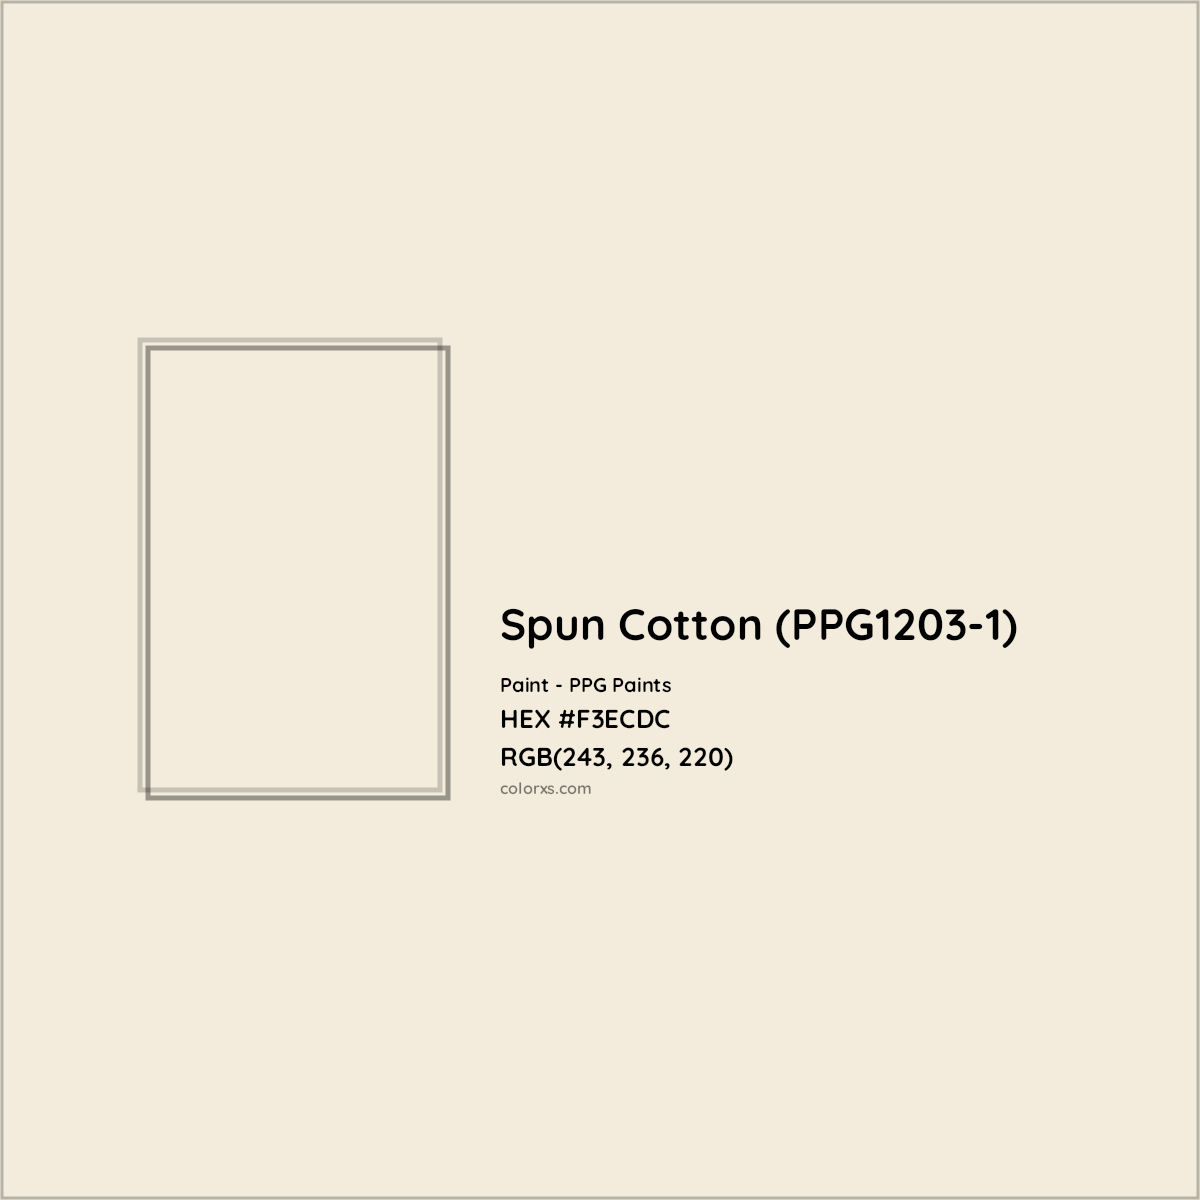 HEX #F3ECDC Spun Cotton (PPG1203-1) Paint PPG Paints - Color Code